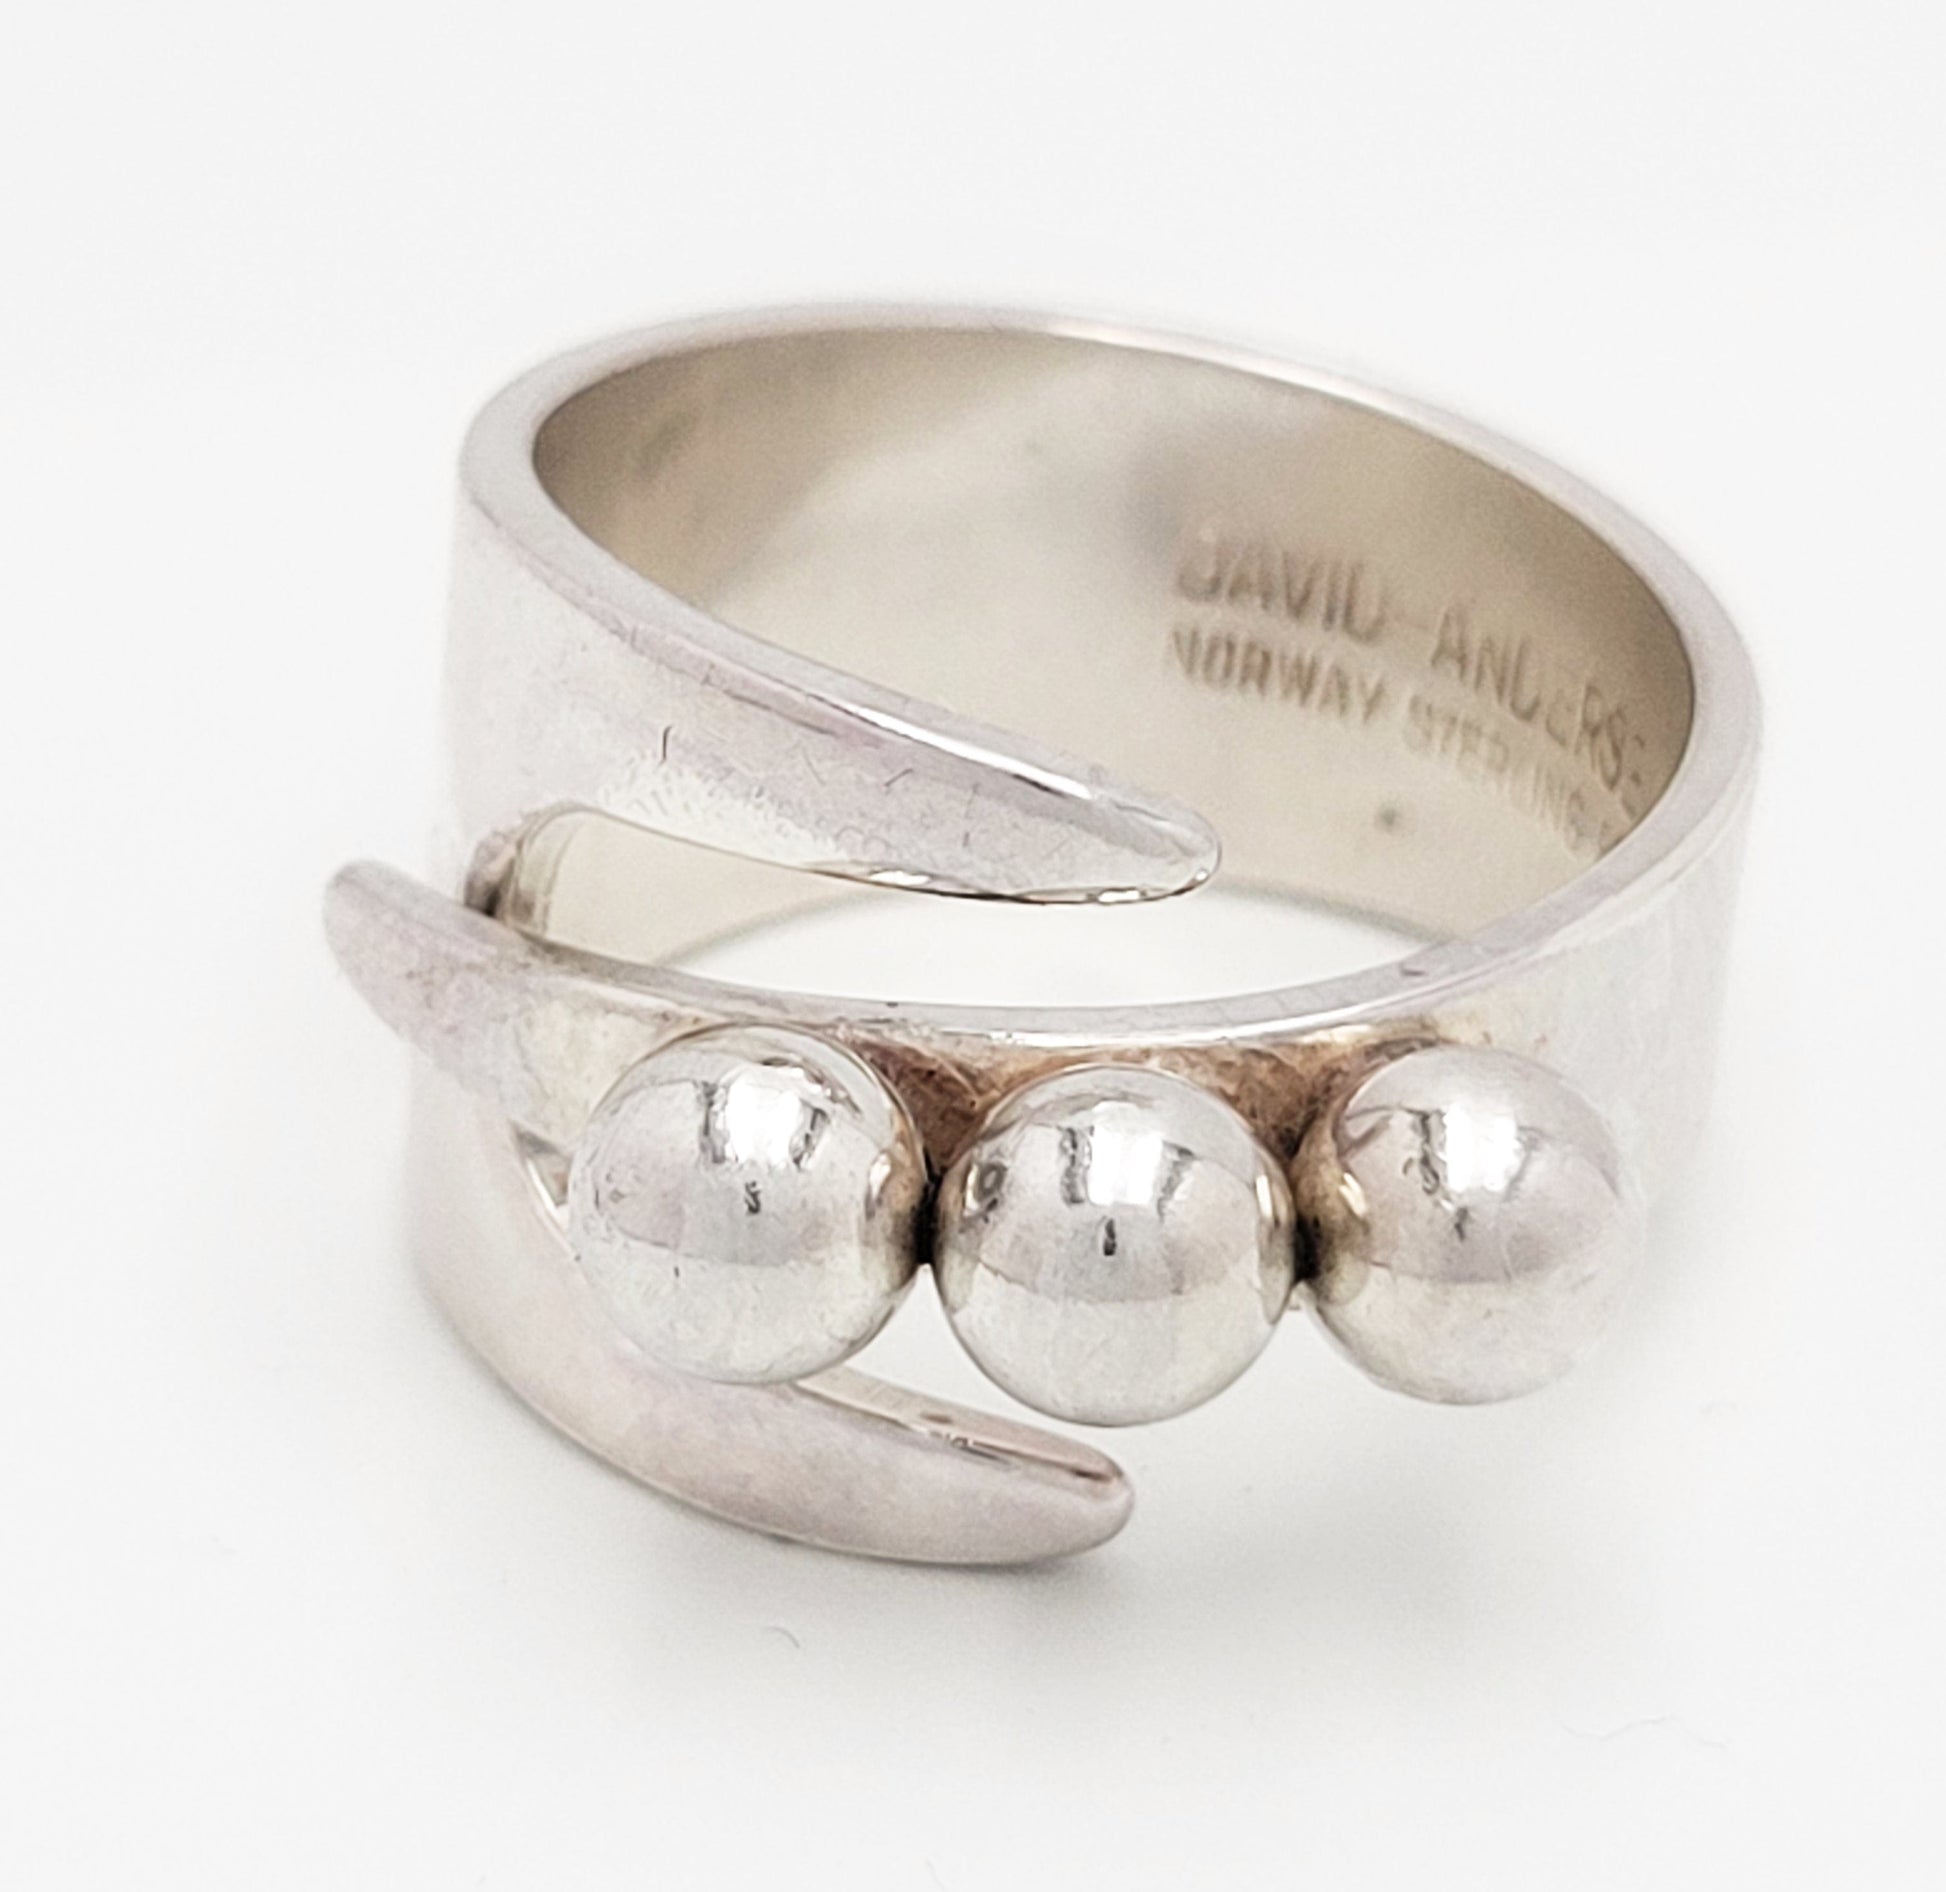 David Andersen Jewelry Norwegian Designer David Andersen Sterling Bypass Wrap Ring 1940/50s